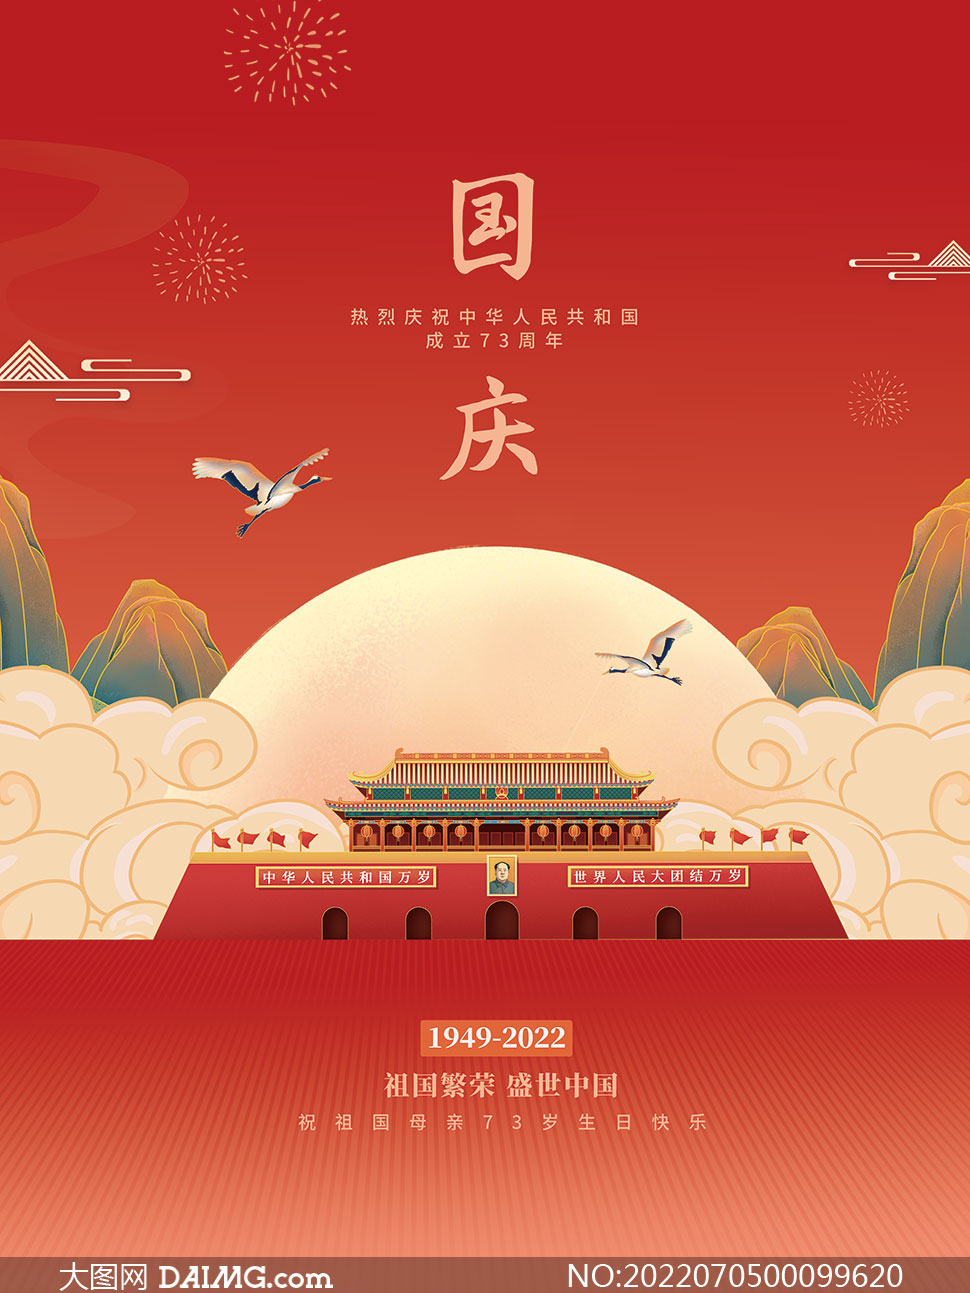 慶祝國慶73周年宣傳海報設計PSD素材